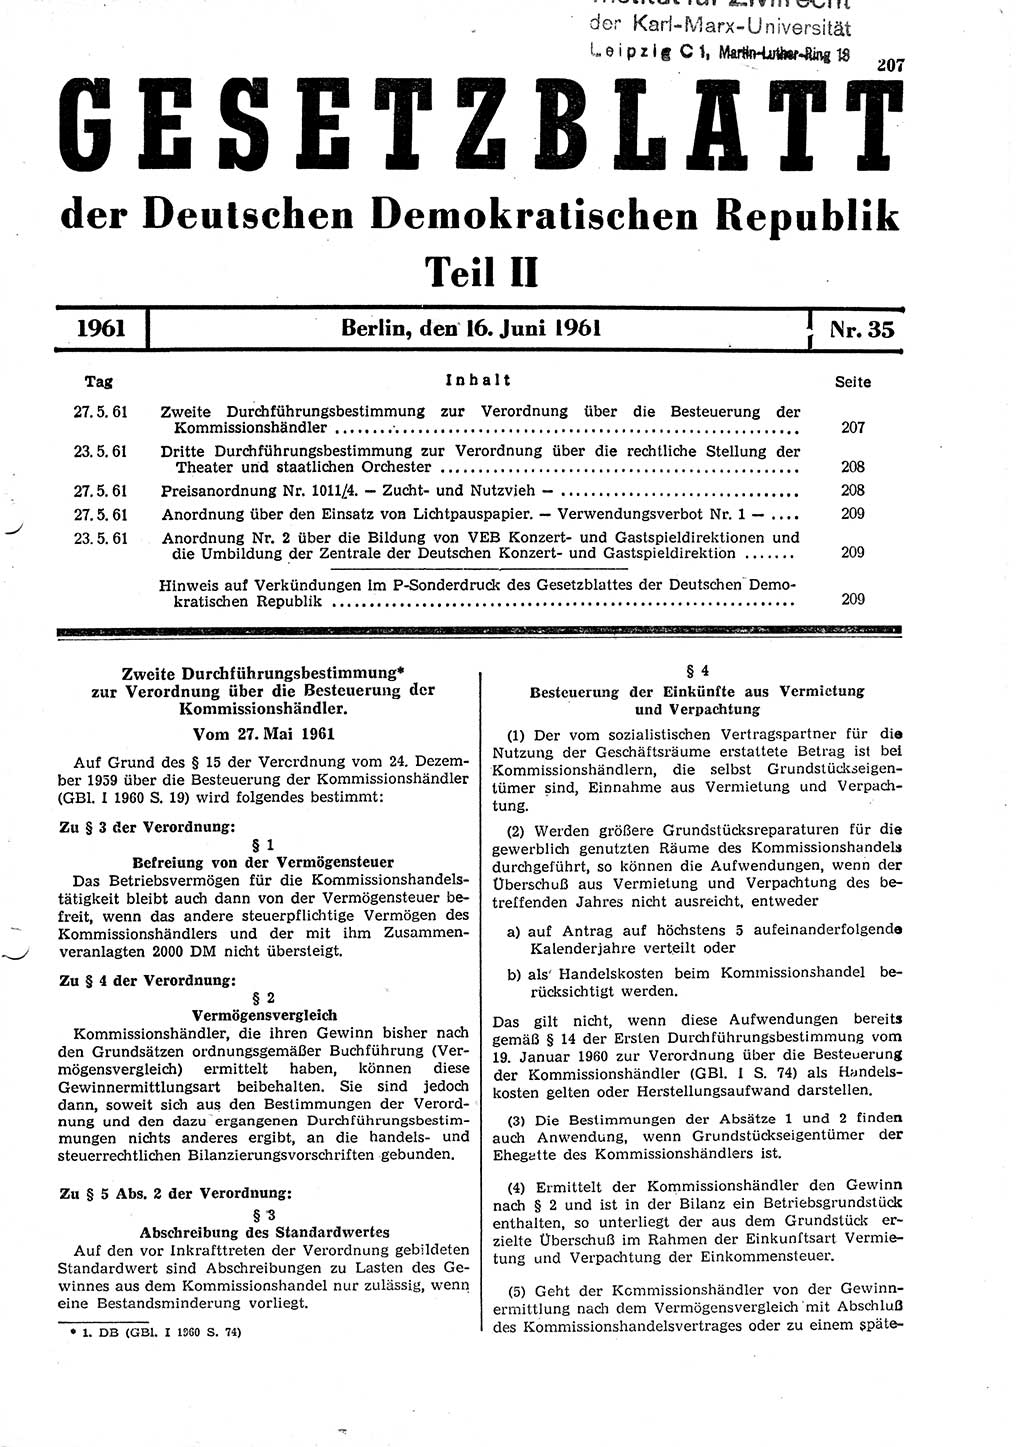 Gesetzblatt (GBl.) der Deutschen Demokratischen Republik (DDR) Teil ⅠⅠ 1961, Seite 207 (GBl. DDR ⅠⅠ 1961, S. 207)